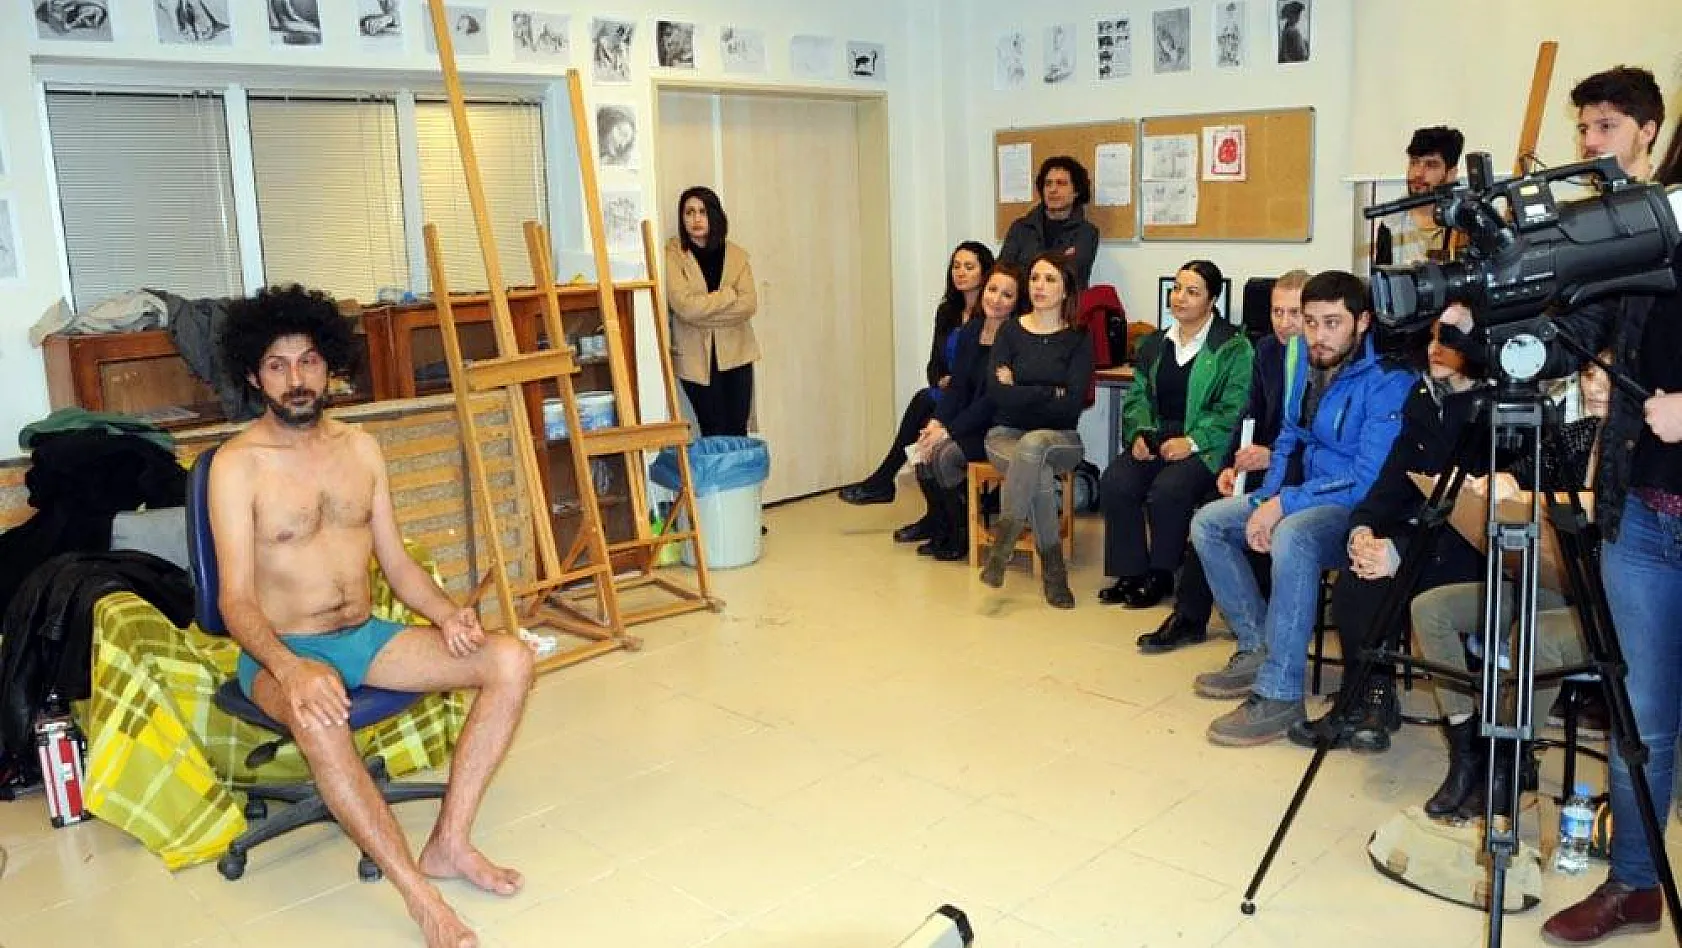 ERÜ Güzel Sanatlar Fakültesi 3 ila 4 bin lira ücretle canlı model arıyor